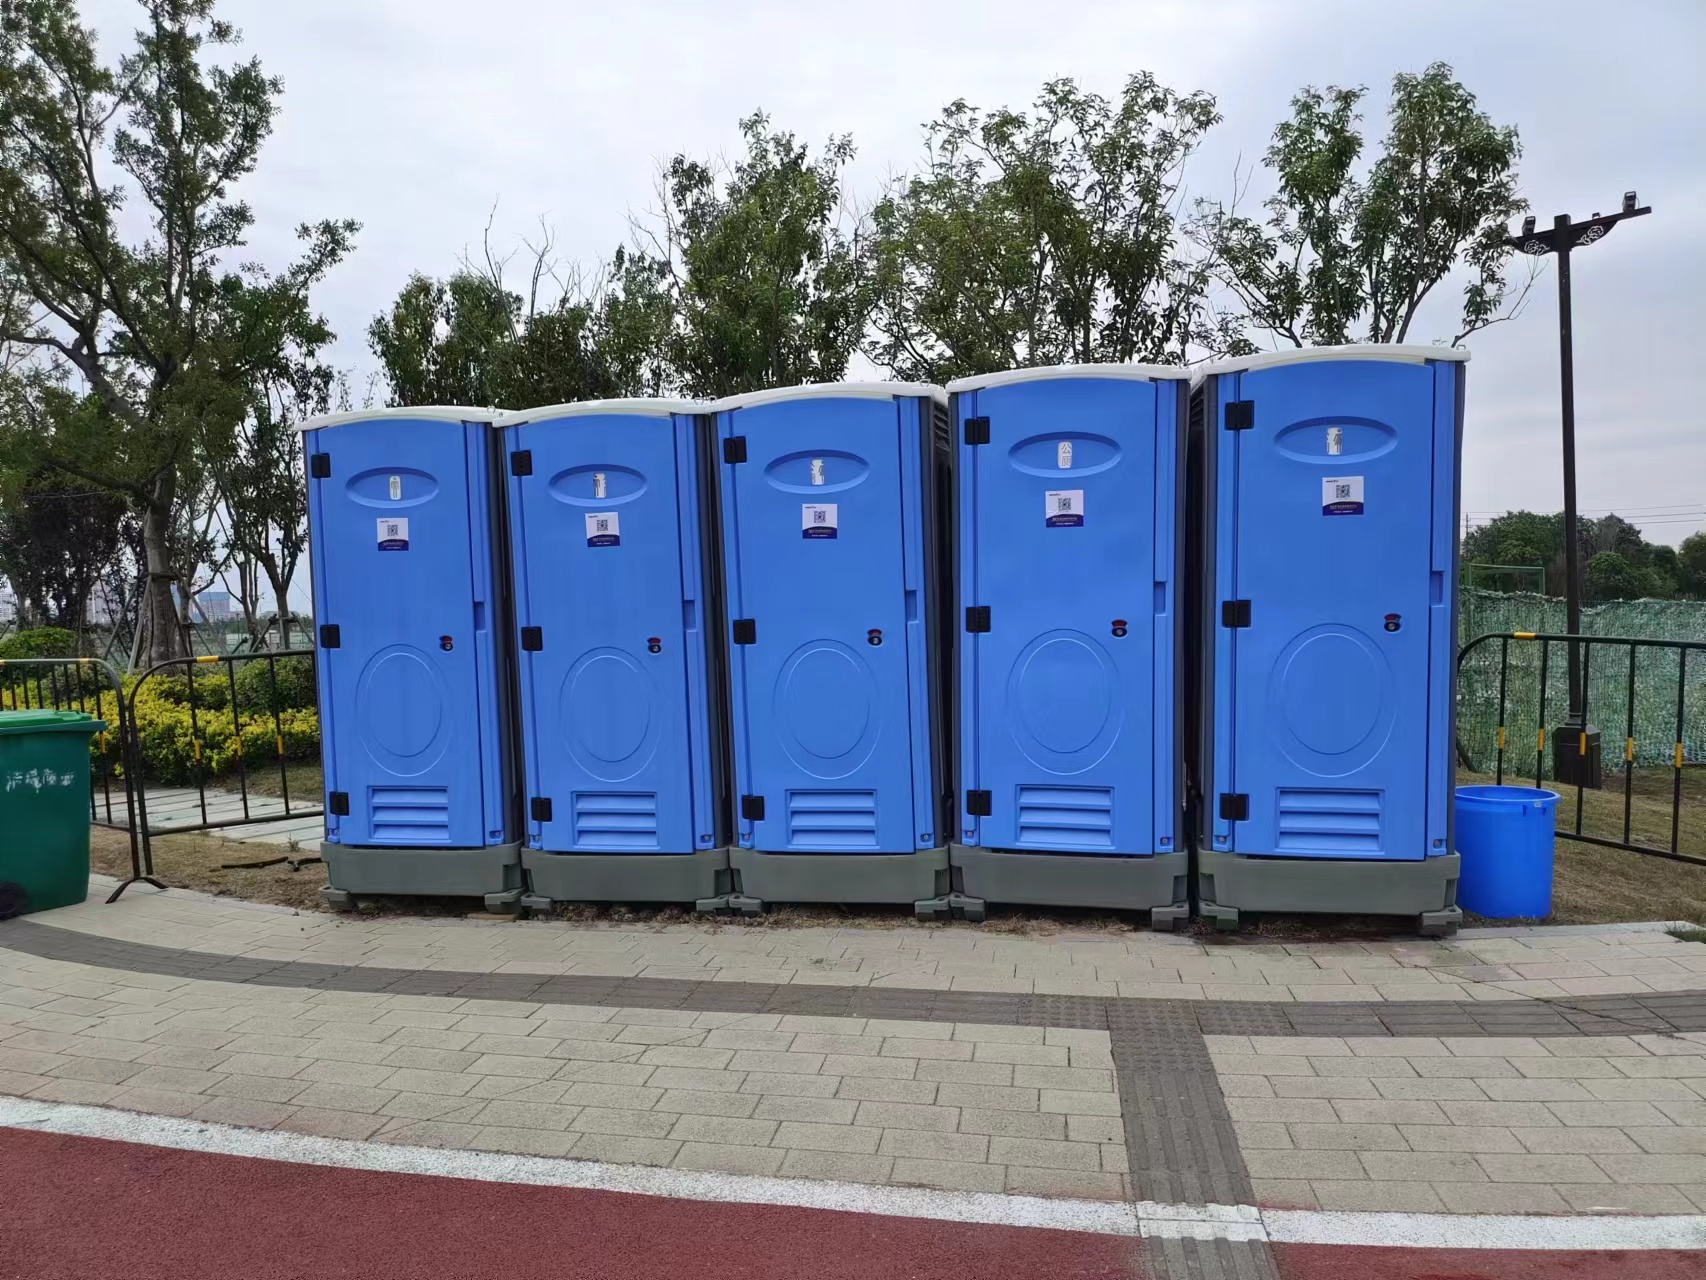 2020青岛啤酒节——158台移动厕所现场保障